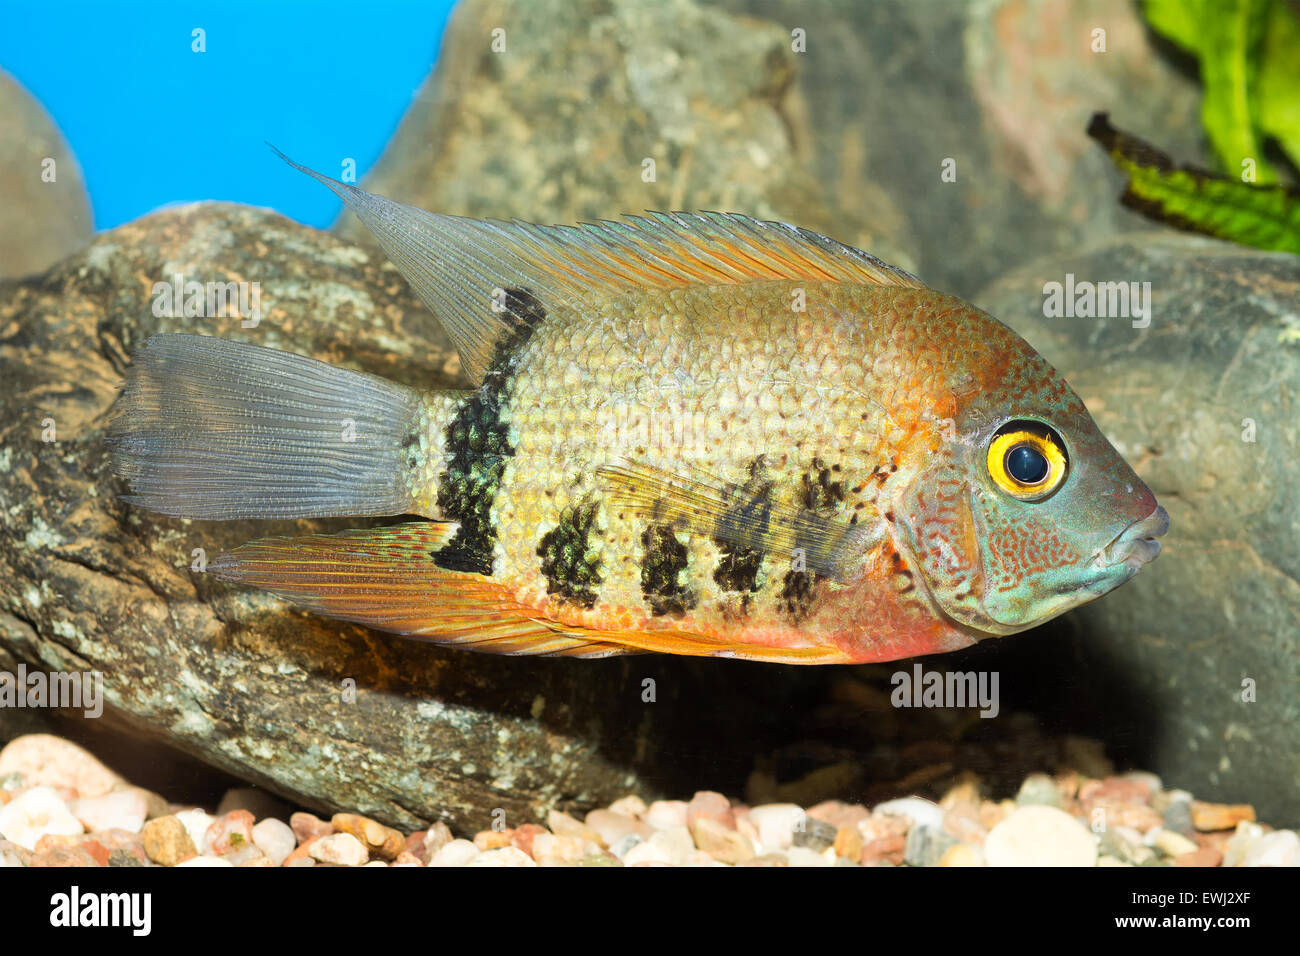 Aquarium cichlid fish from genus Heros. Stock Photo